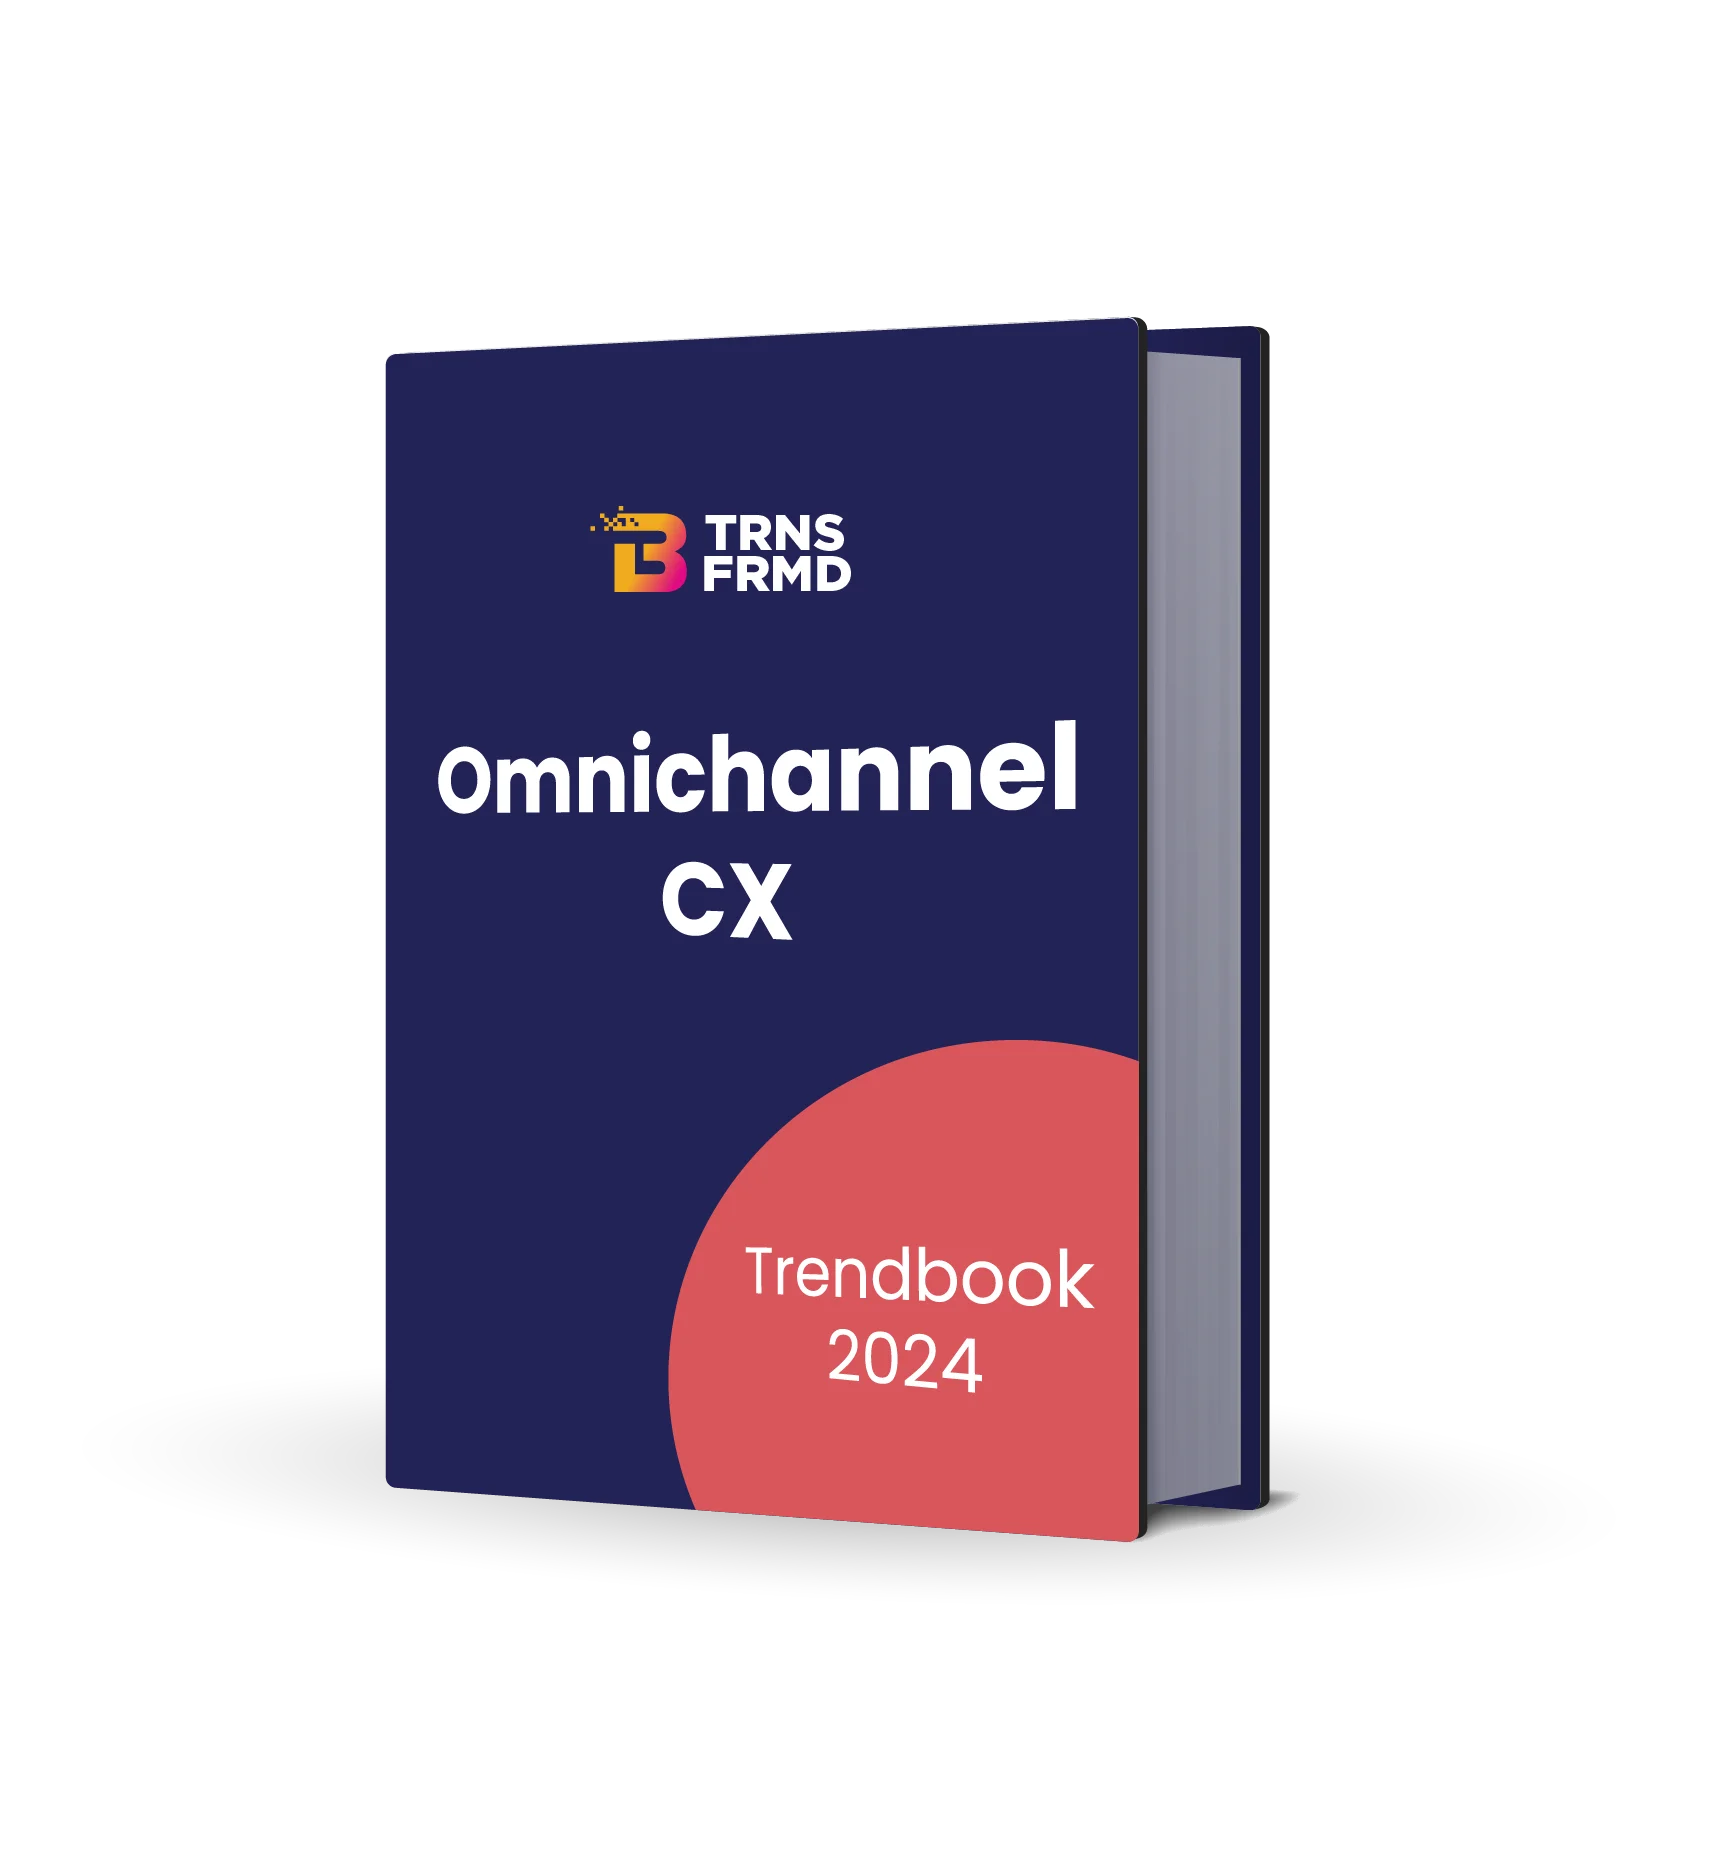 Omnichannel CX trendbook